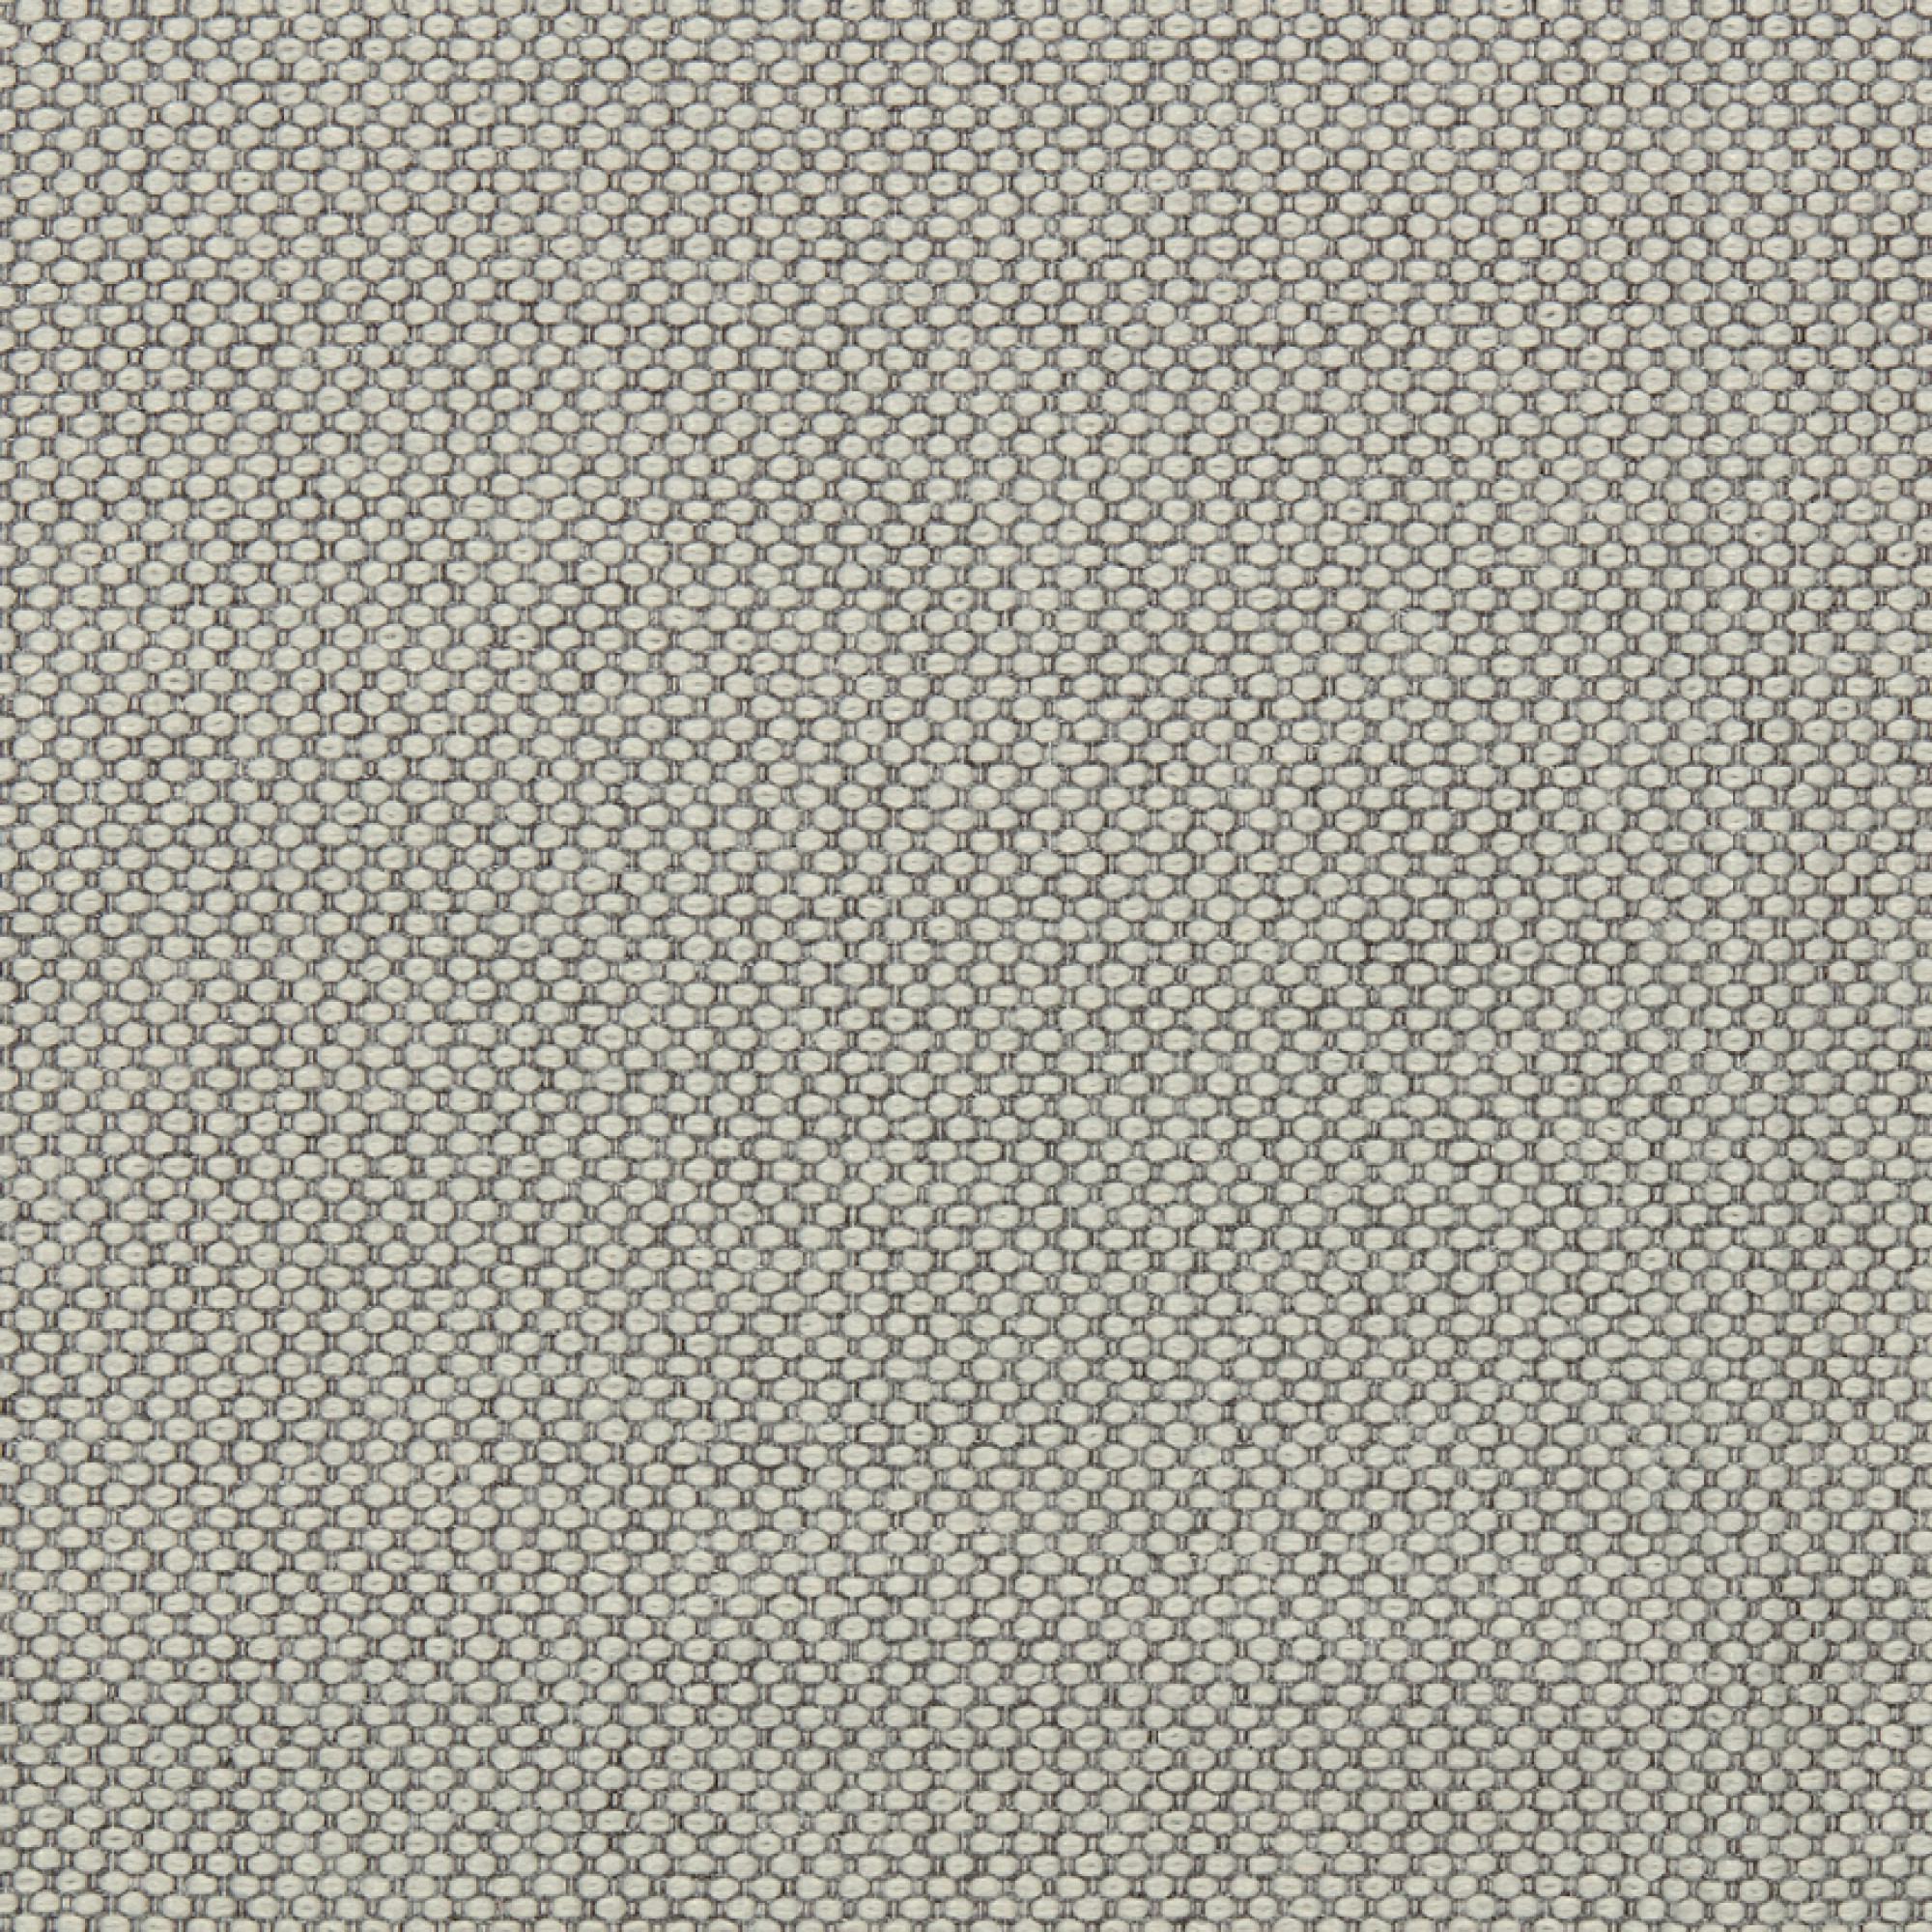 Fabric sample Merit 0023 brown